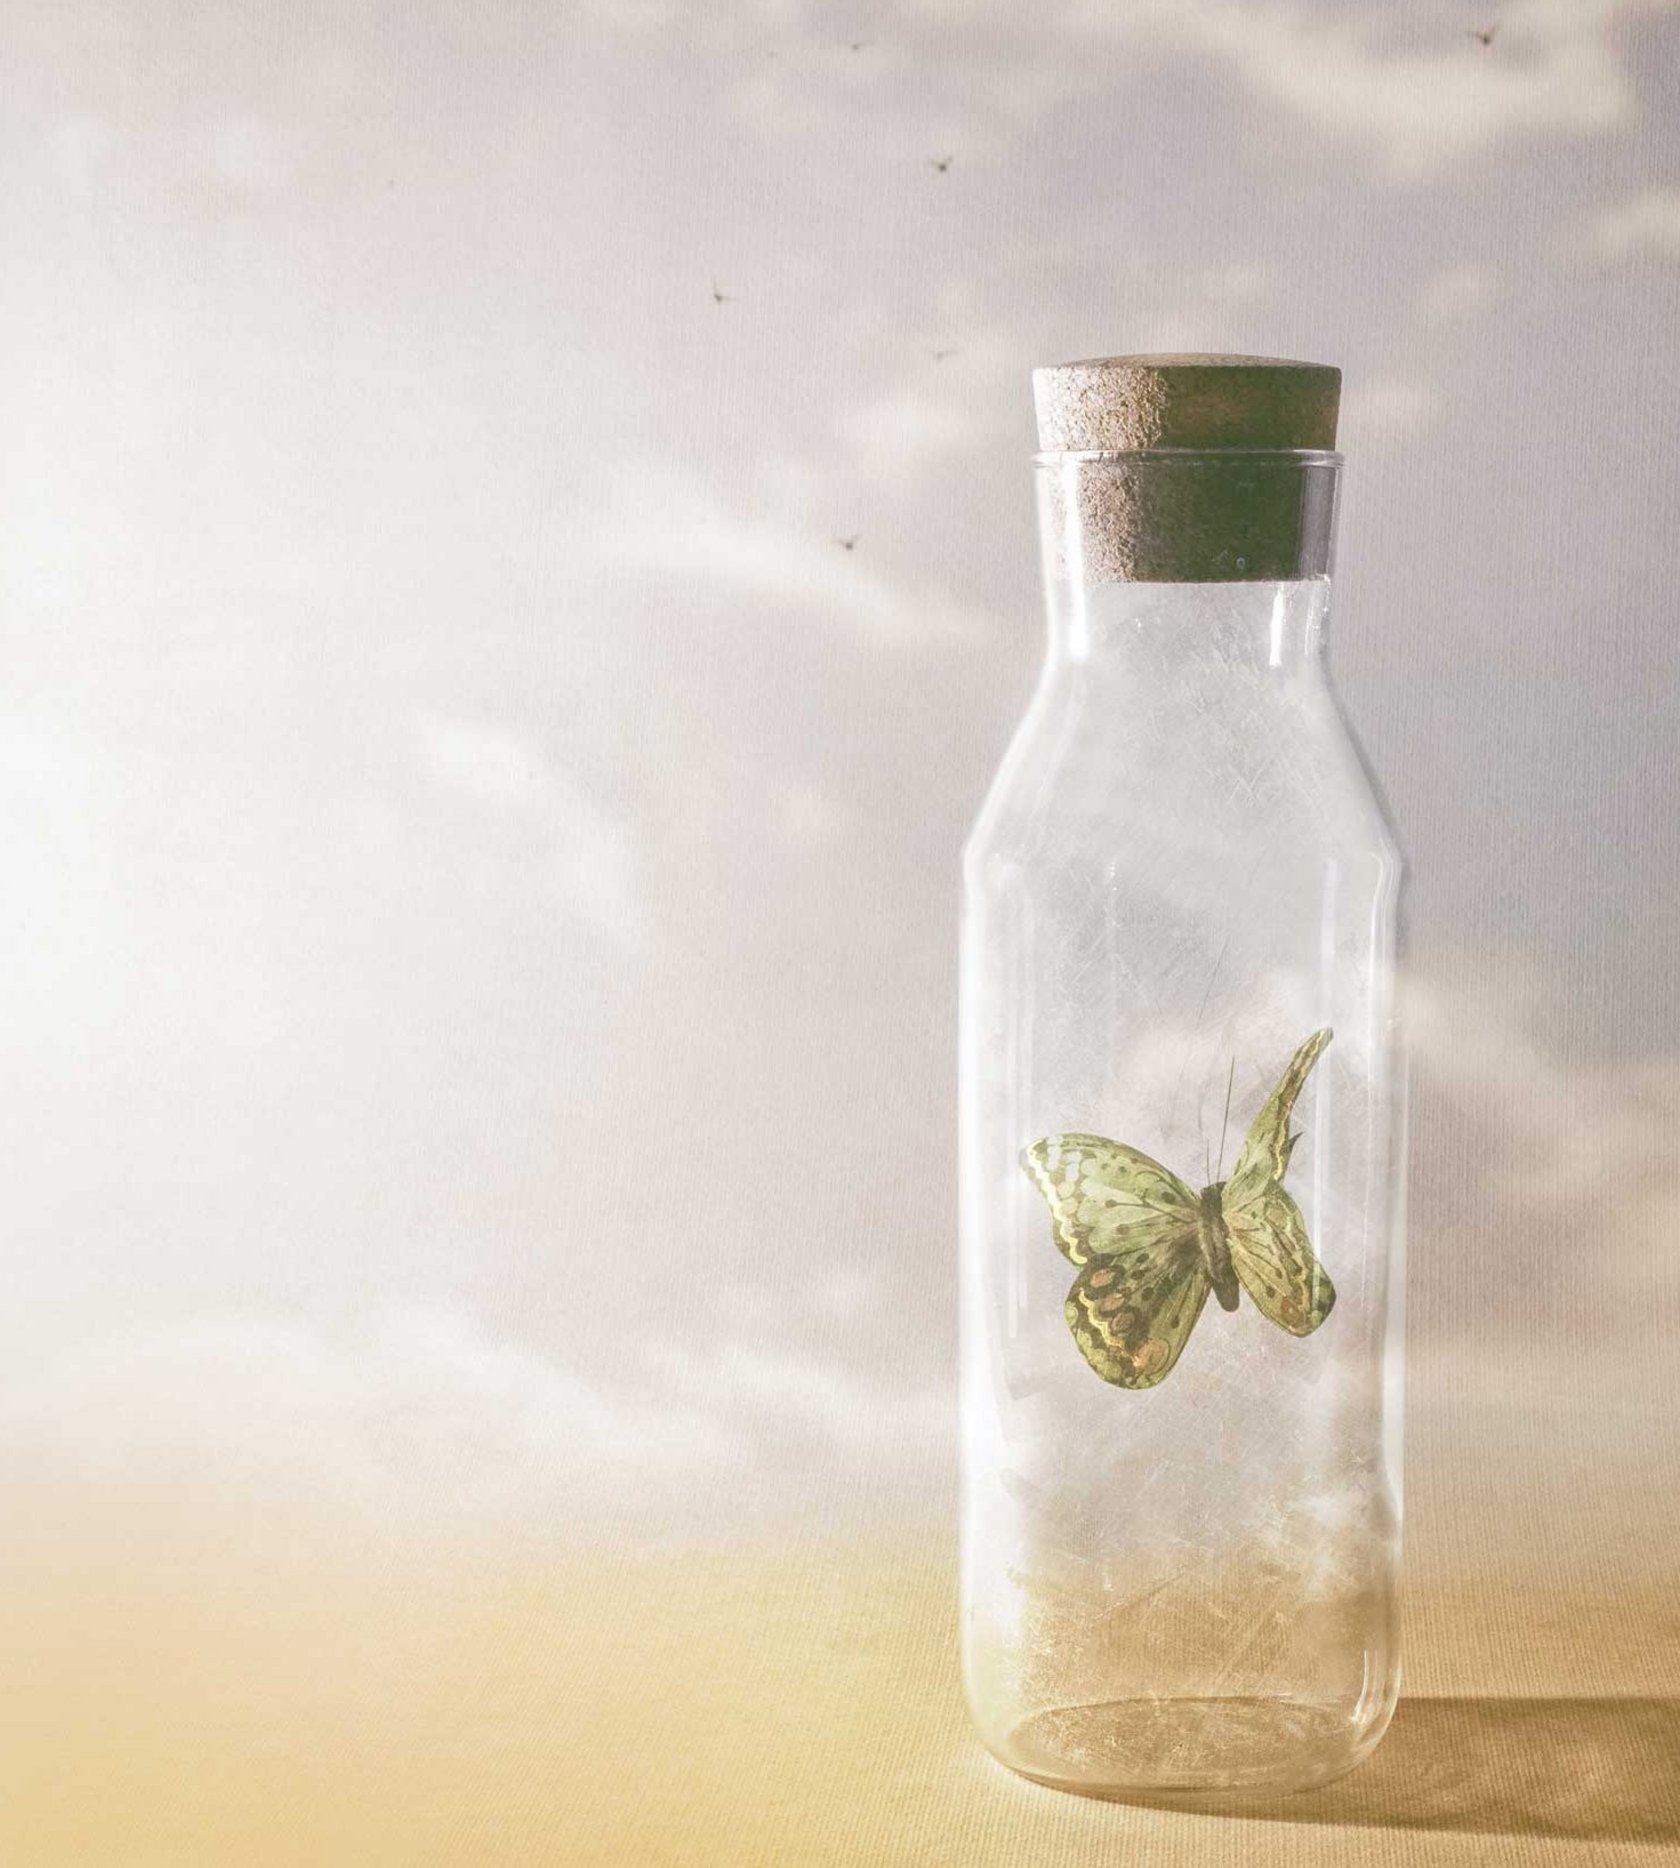 Ein Schmetterling wird in einer Flasche gefangen gehalten.